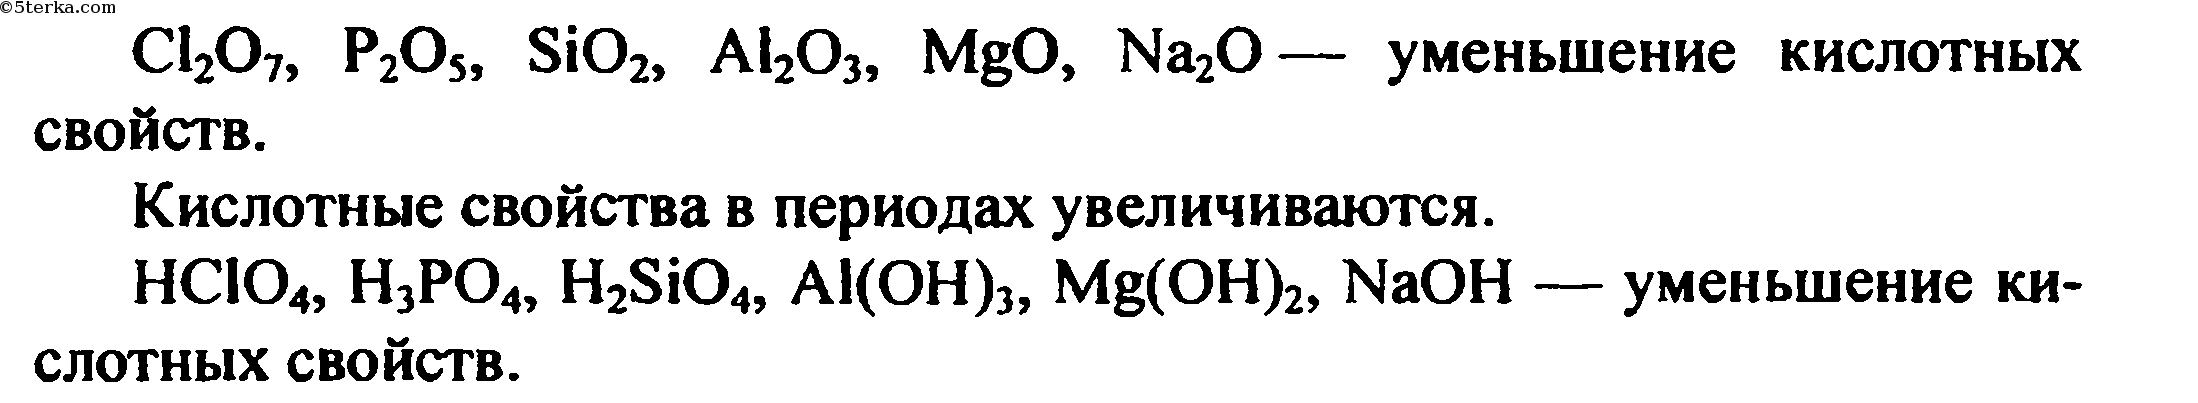 Формула гидроксида sio2. Порядок уменьшения кислотных свойств их оксидов. Порядок уменьшения кислотеый свойств. Расположите в порядке ослабления кислотных свойств. Расположить в порядке ослабевания кислотных свойств.